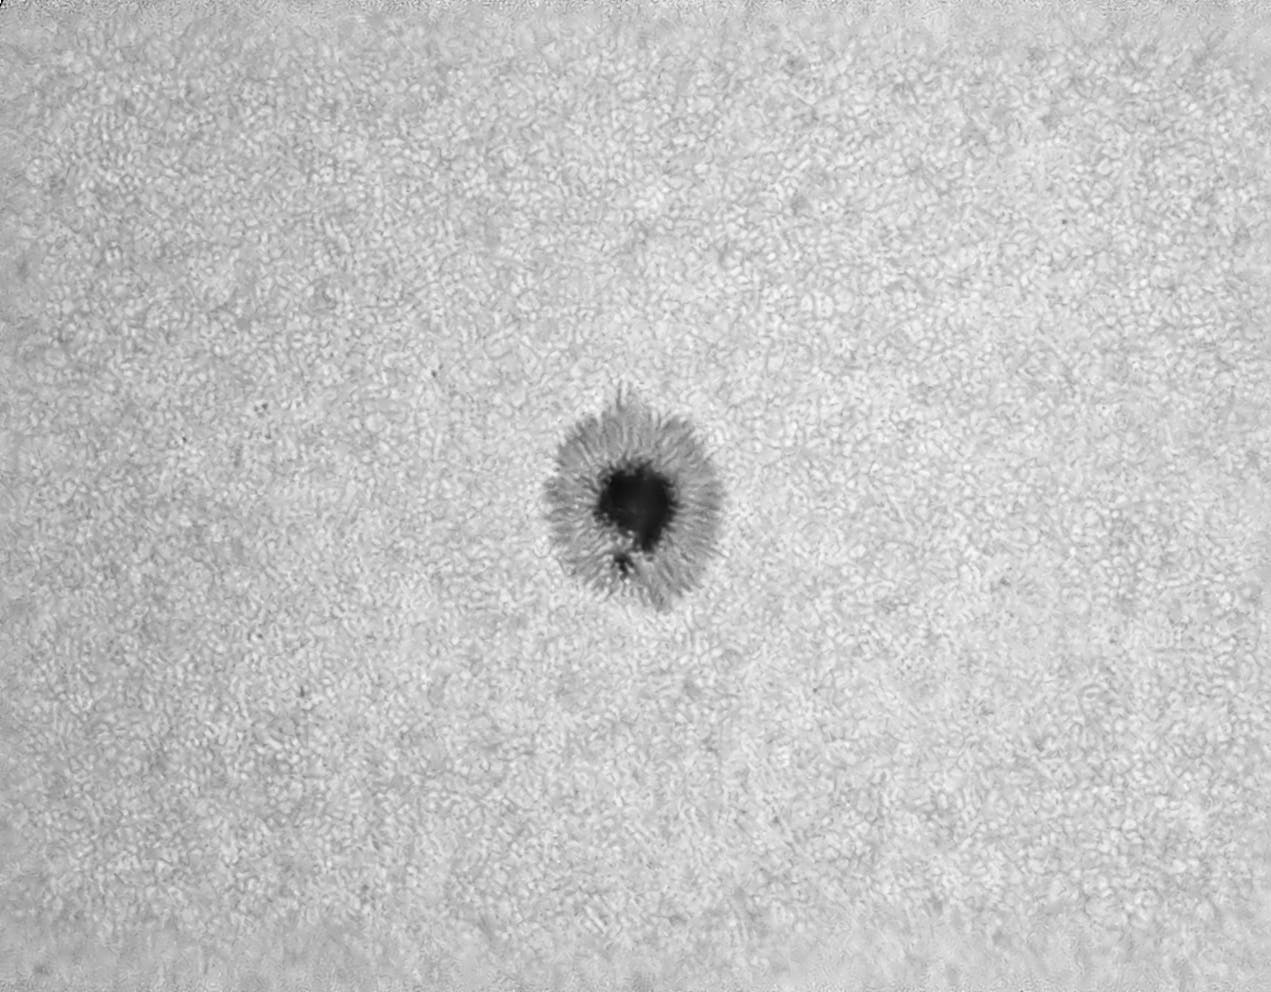 Sonnenfleck AR3074 am 9. August 2022